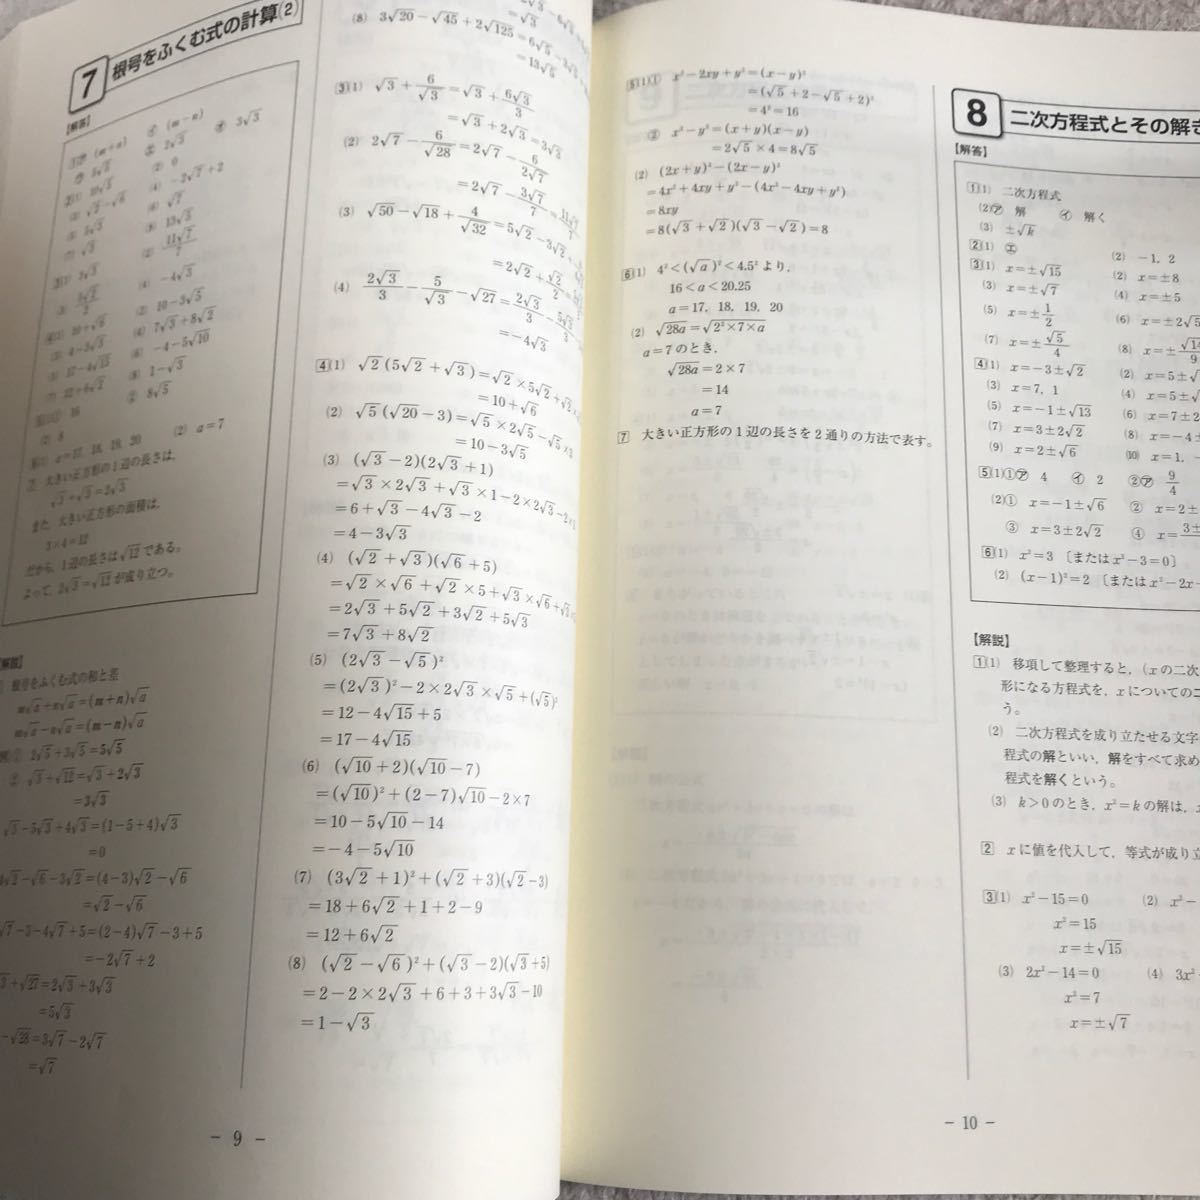 【啓林】中3数学 問題集 iワークプラス